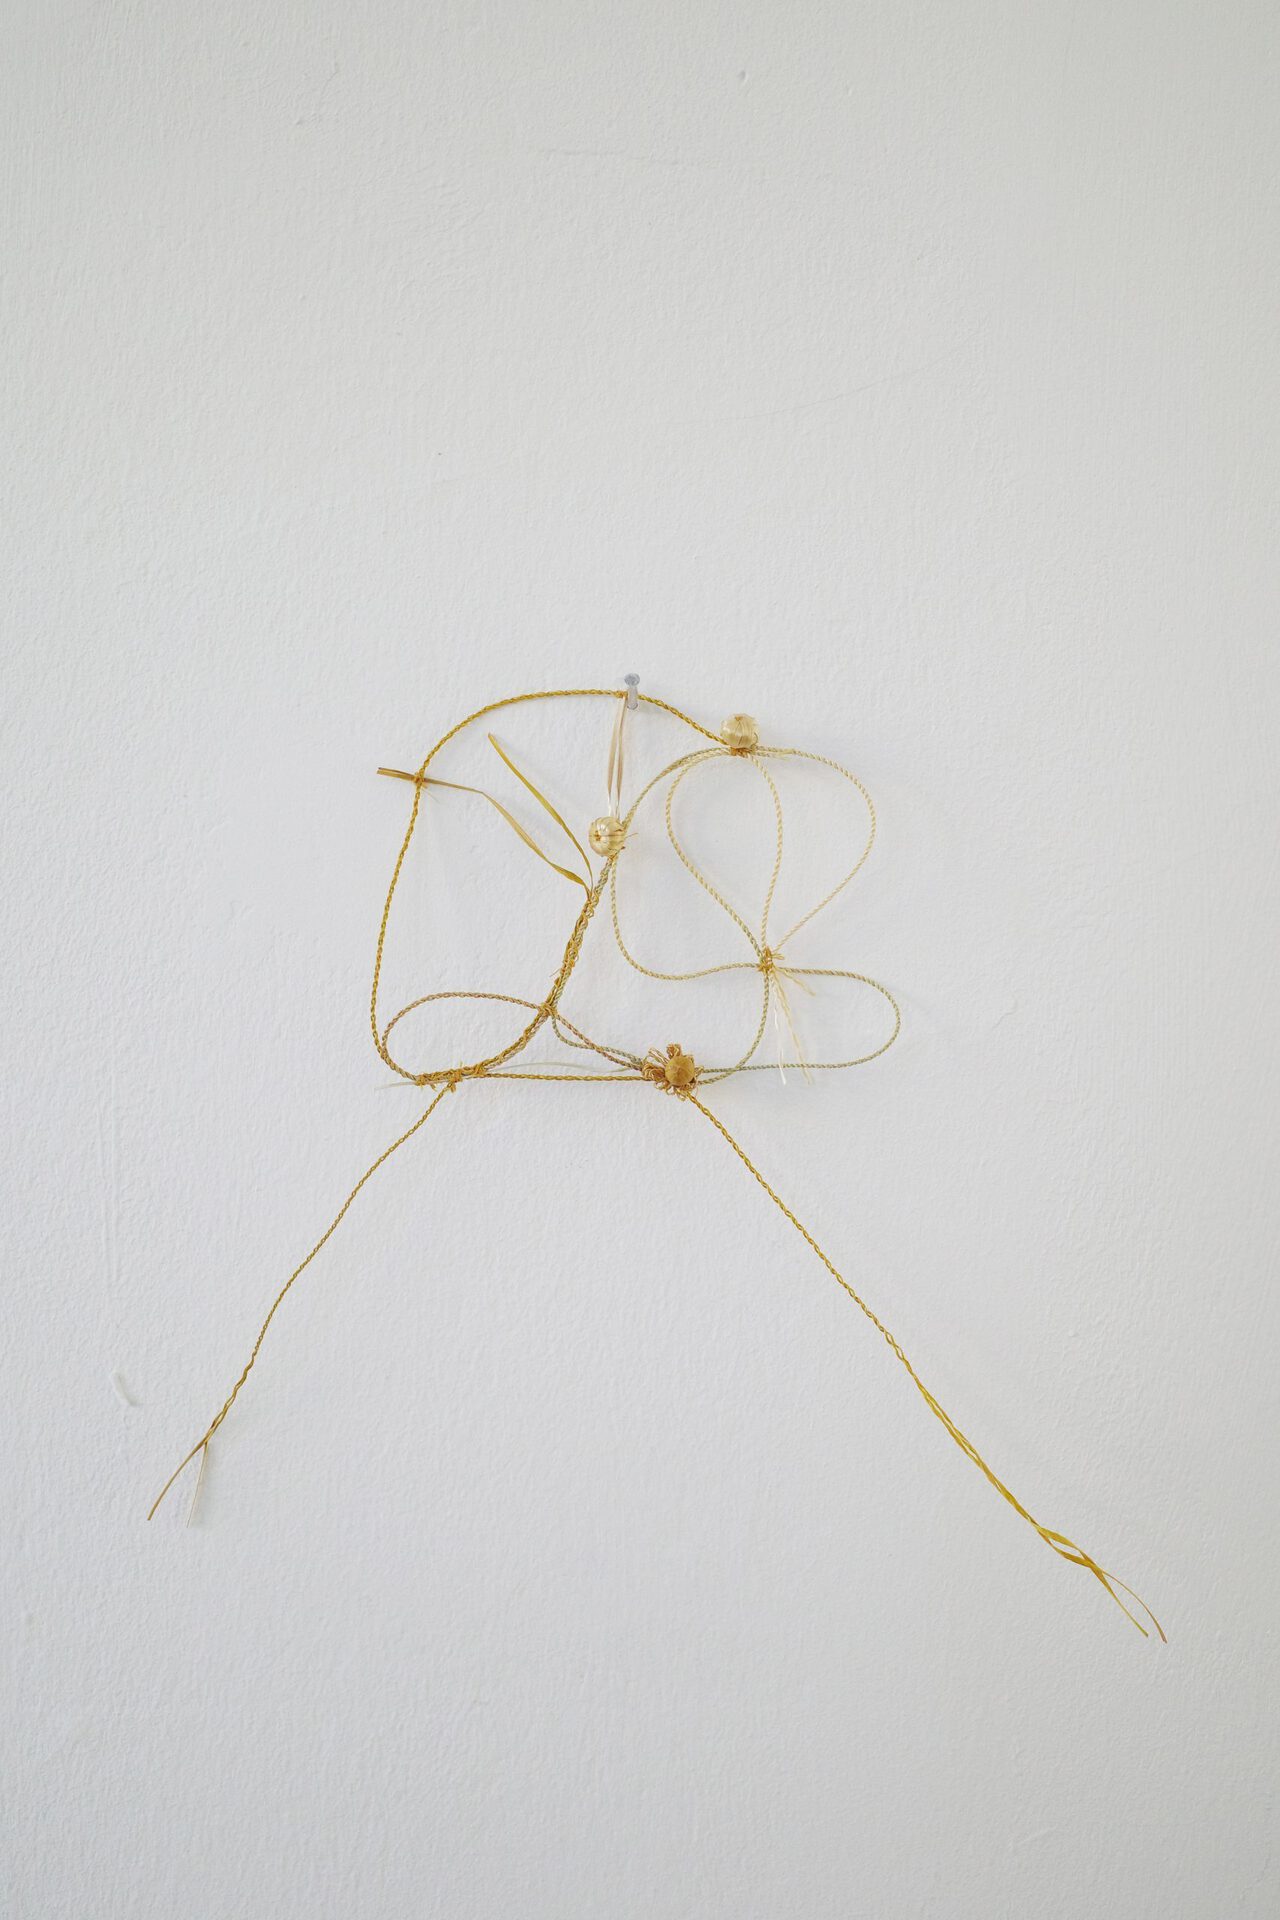 Jessy Razafimandimby, Untitled 2022 28 x 11 cm rye straw, linen button, straw button